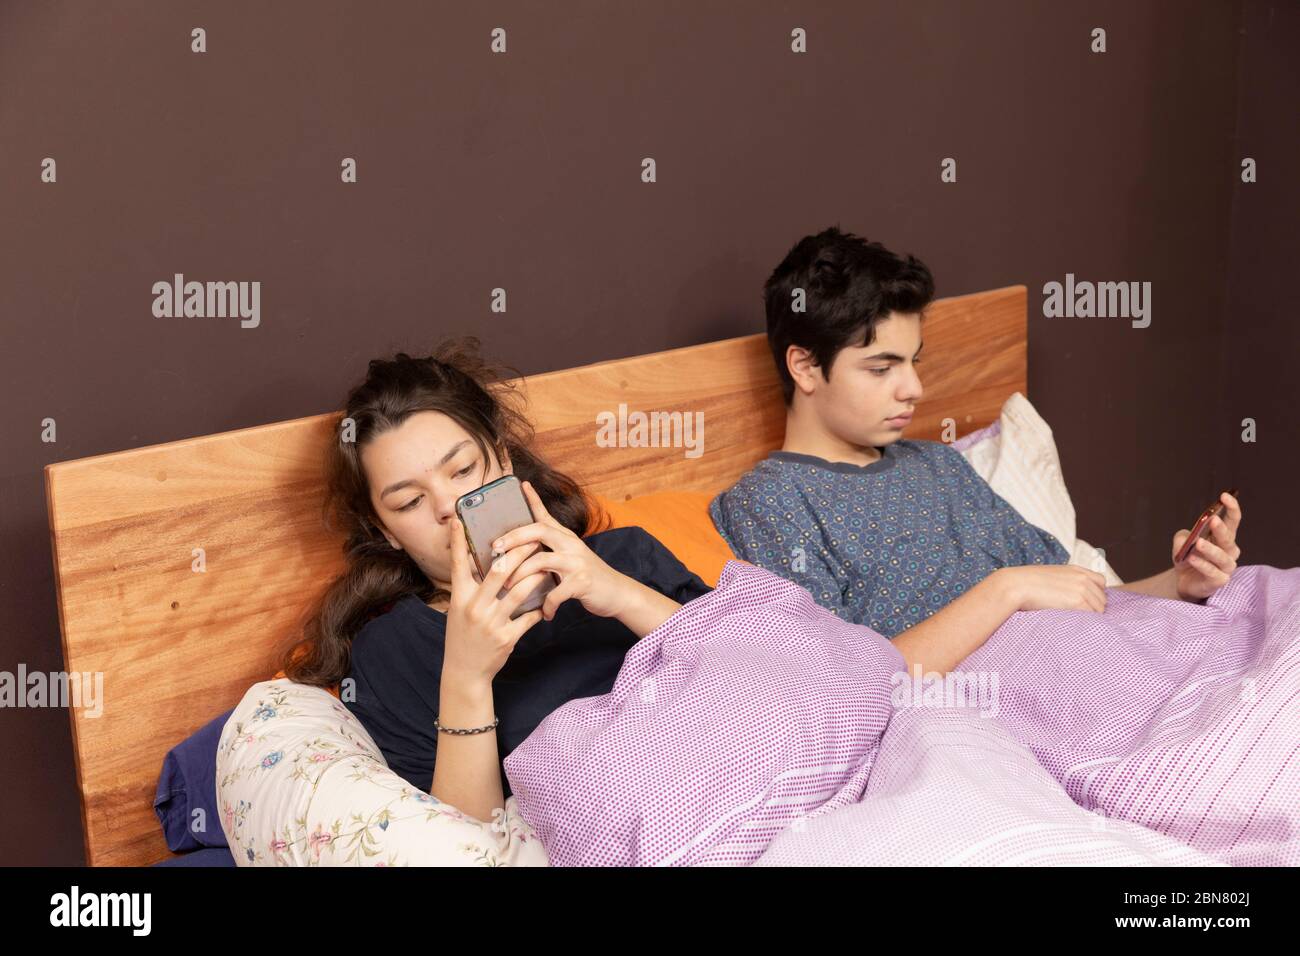 Una ragazza e un ragazzo insieme nel letto matrimoniale. Anche se sono insieme, tutti sono soli con il suo telefono. Foto Stock